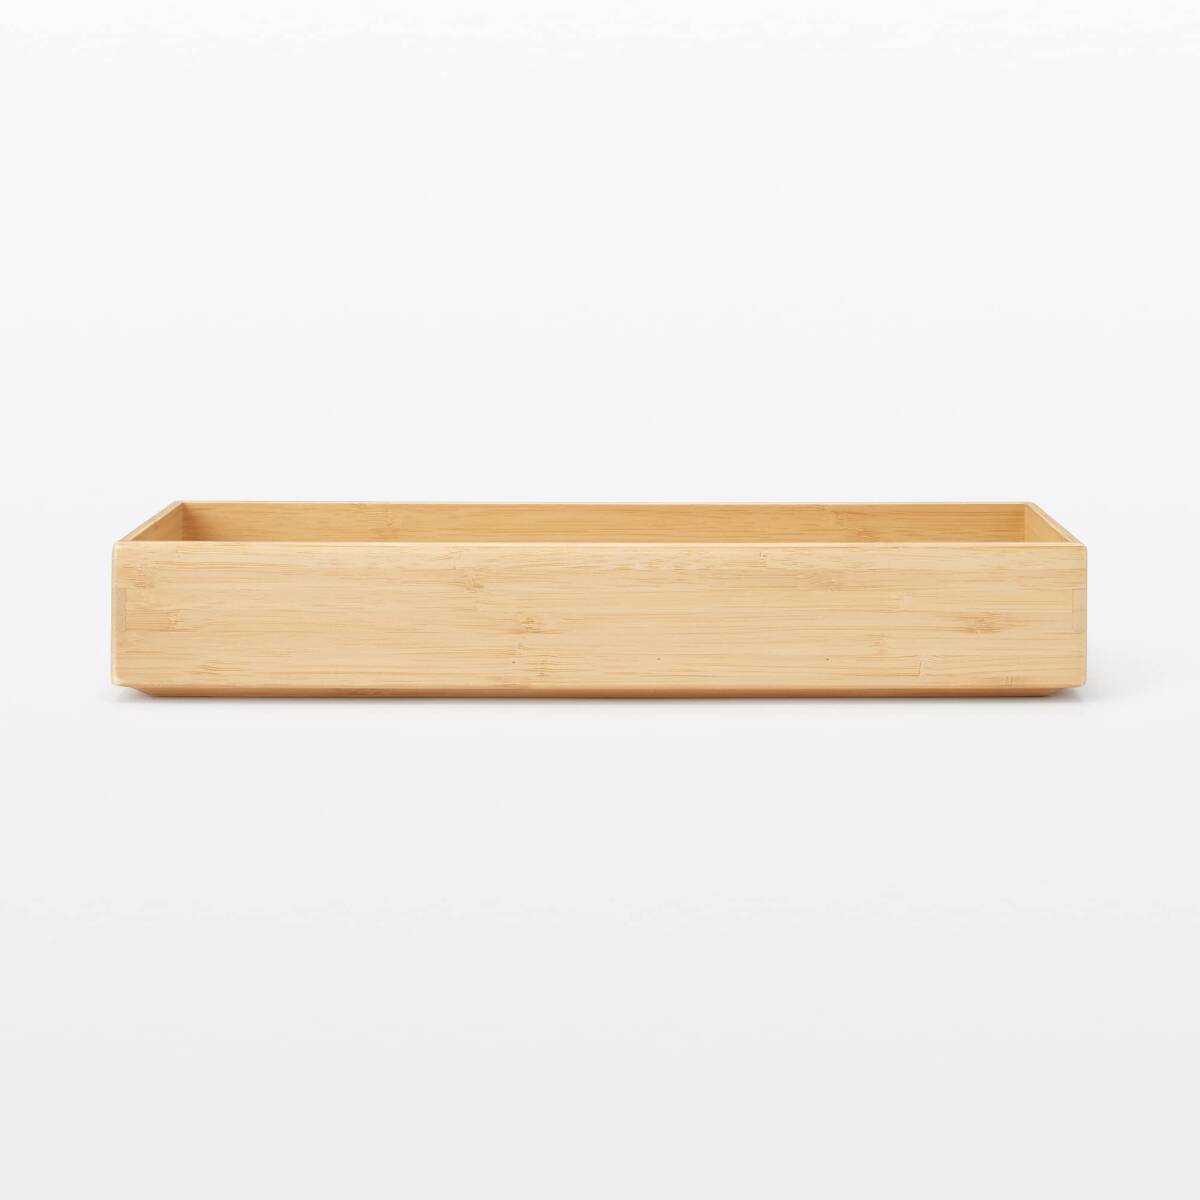 無印良品 重なる竹材整理ボックス 収納用品 大 幅11.5×奥行34×高さ5.5cm 12057895_画像3